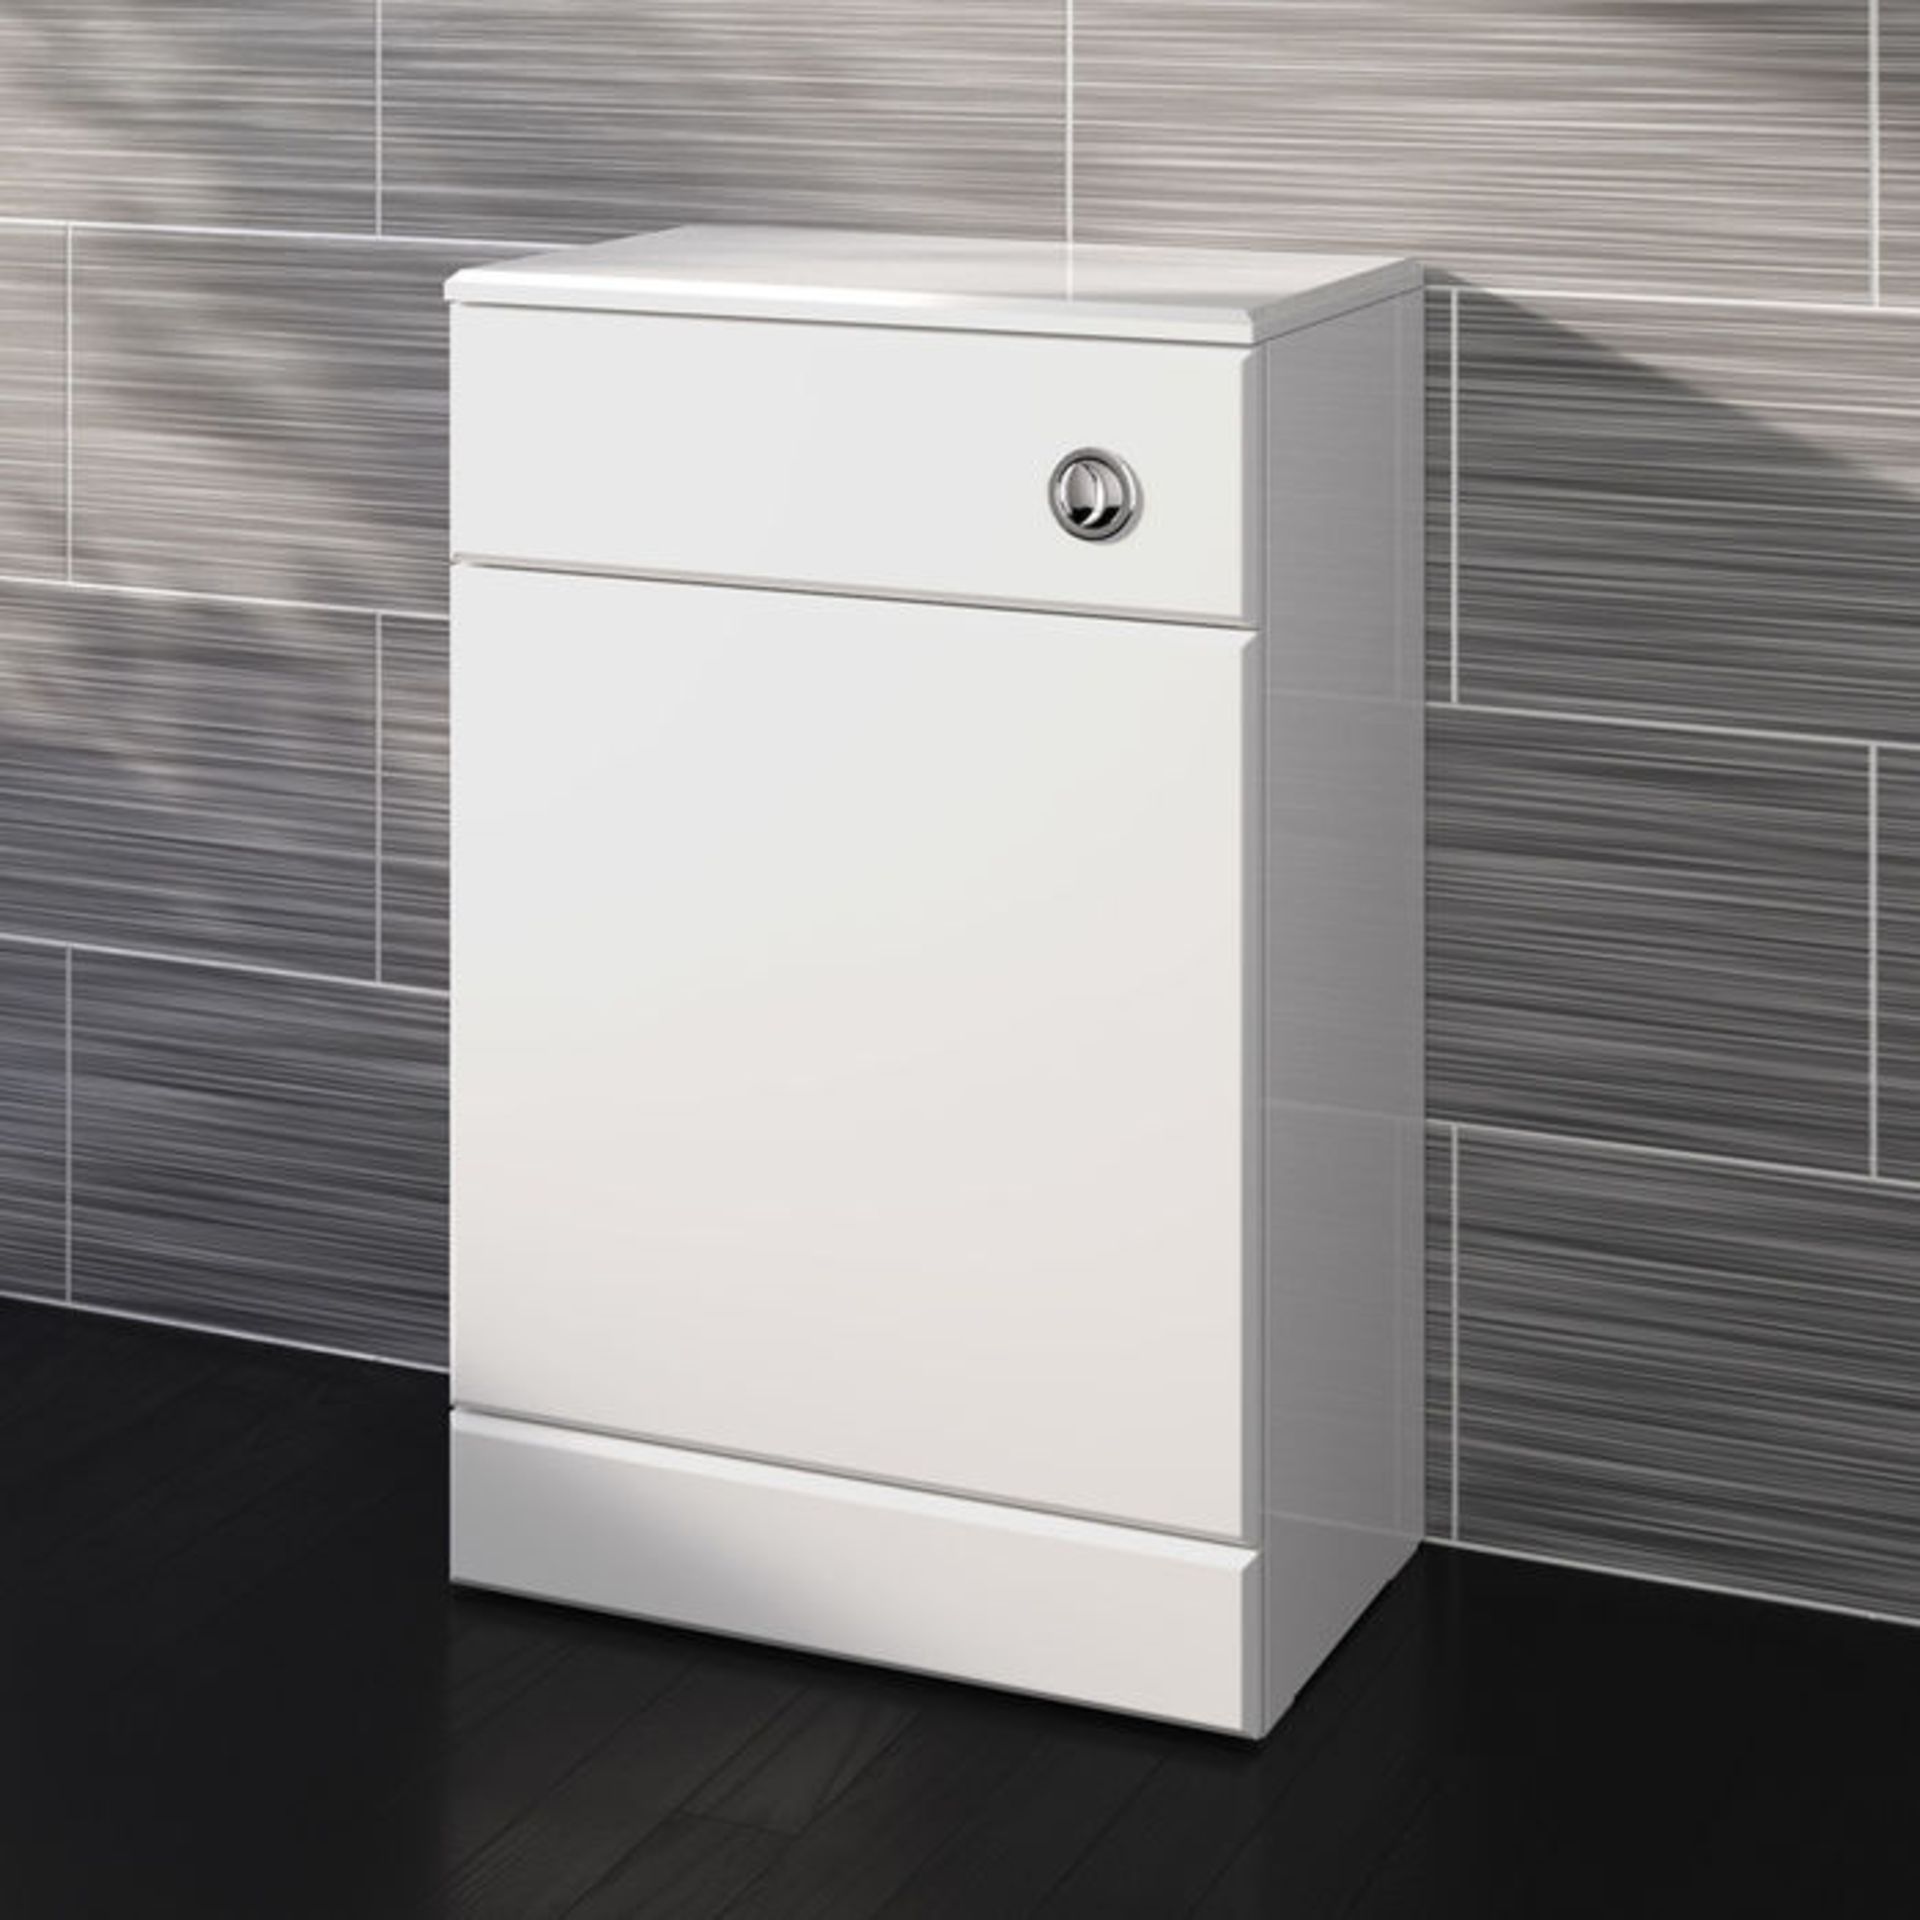 (G80) 500x300mm Quartz Gloss White Back To Wall Toilet Unit RRP £143.99 Pristine gloss white - Image 2 of 5